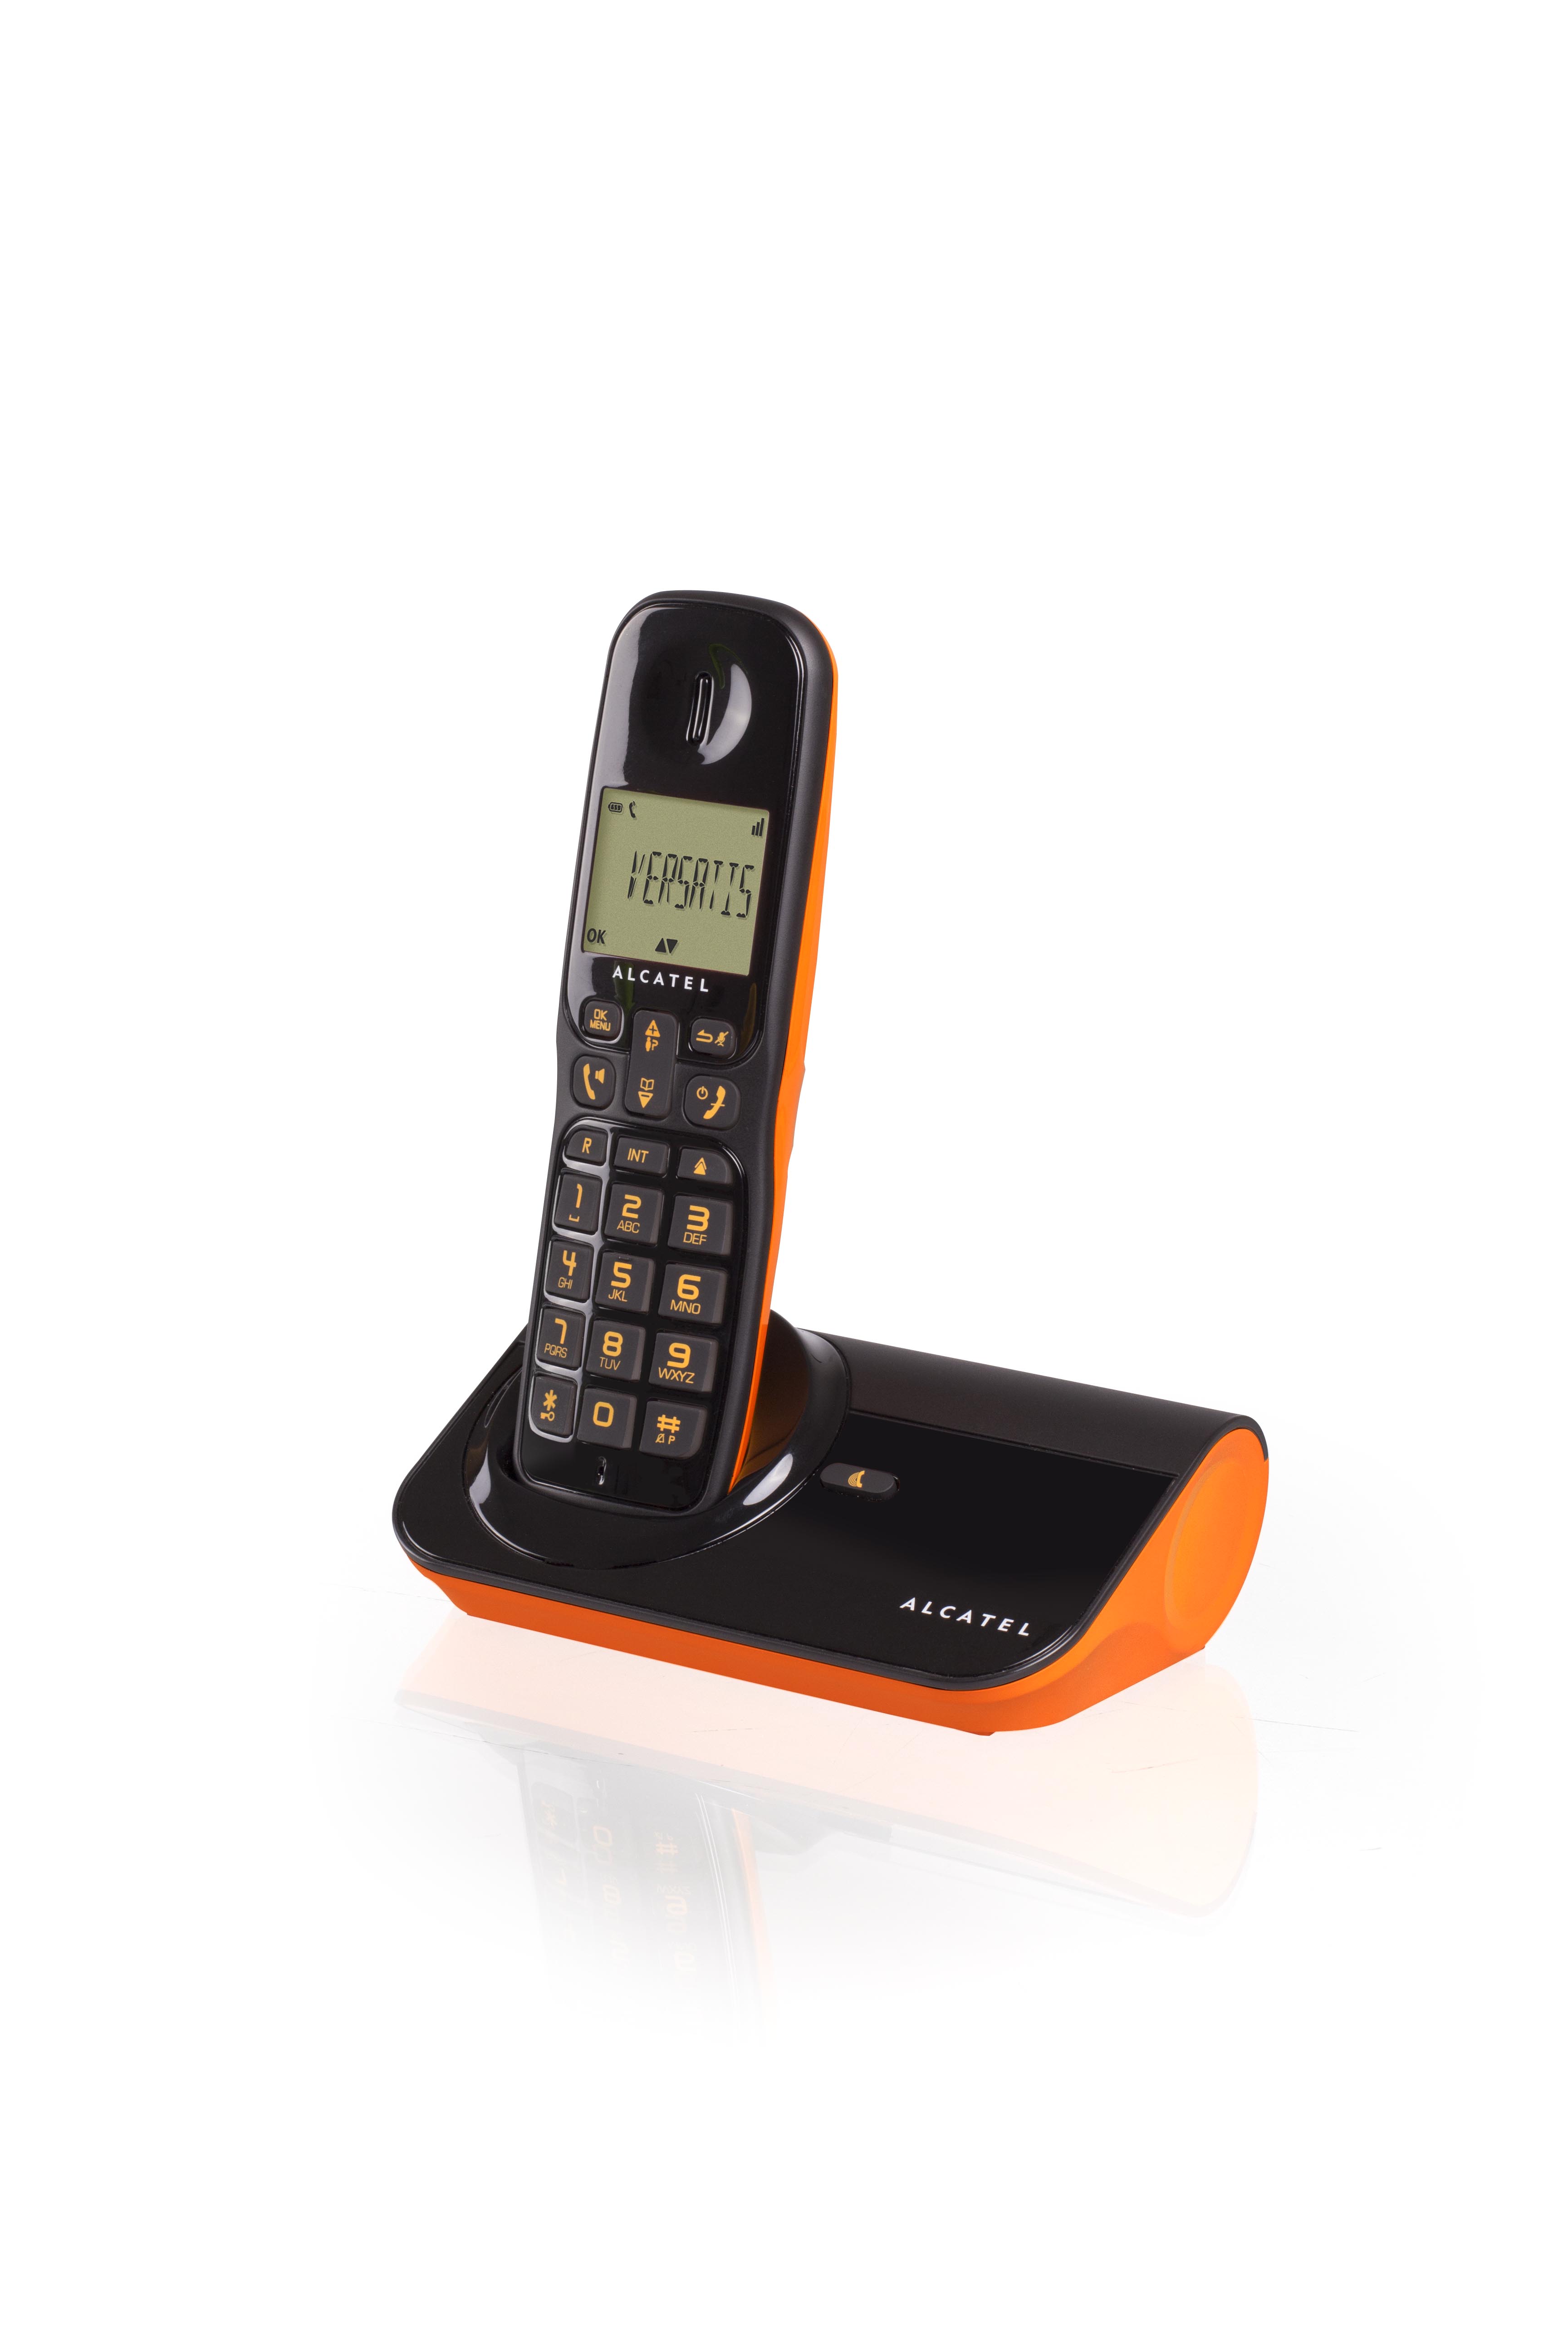 Particulier > Teléfonos inalámbricos - FAQ - Alcatel Home & Business phones